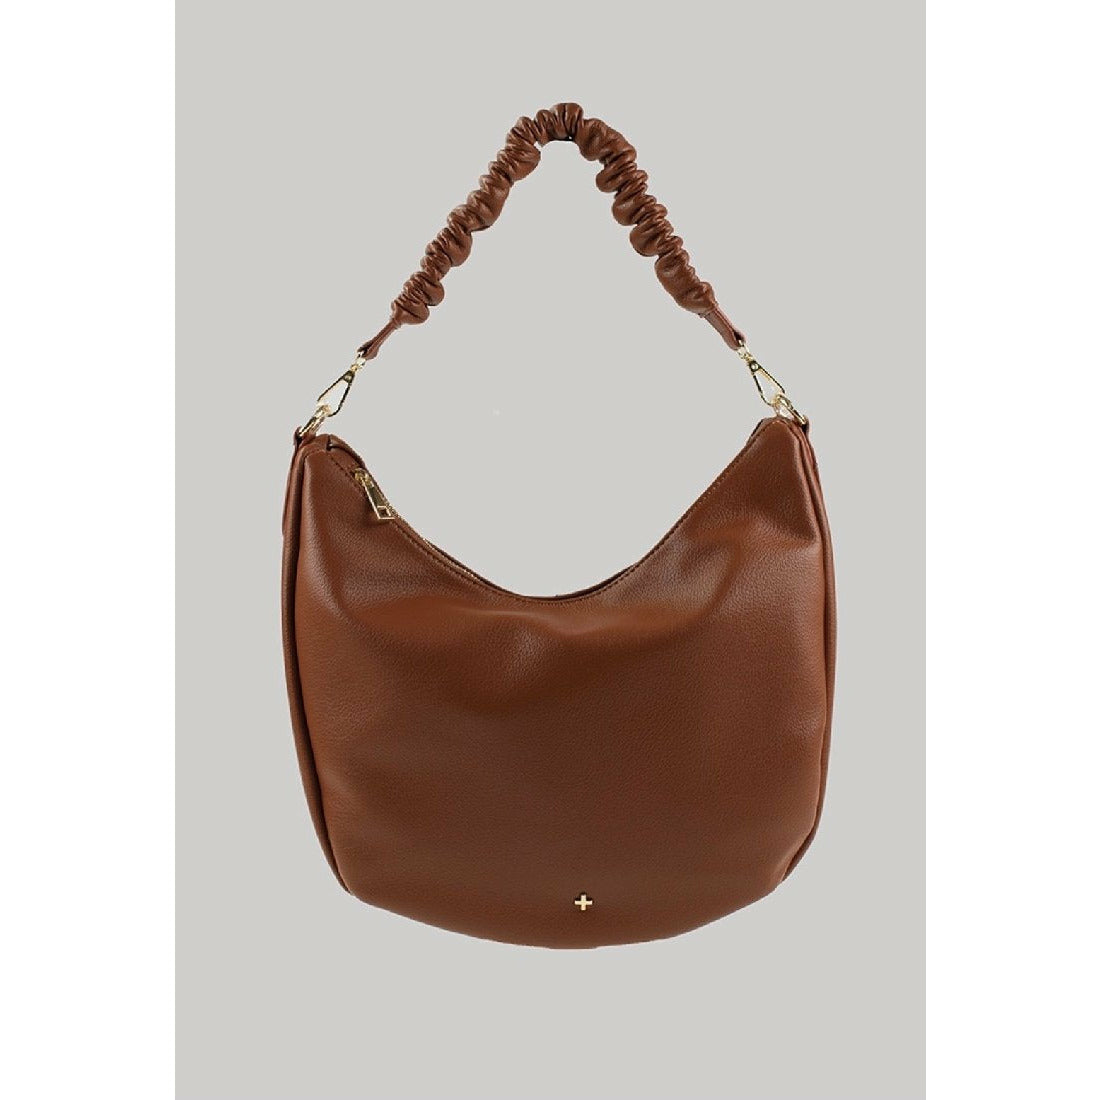 Peta + Jain Olive Shoulder Bag - Little Extras Lifestyle Boutique